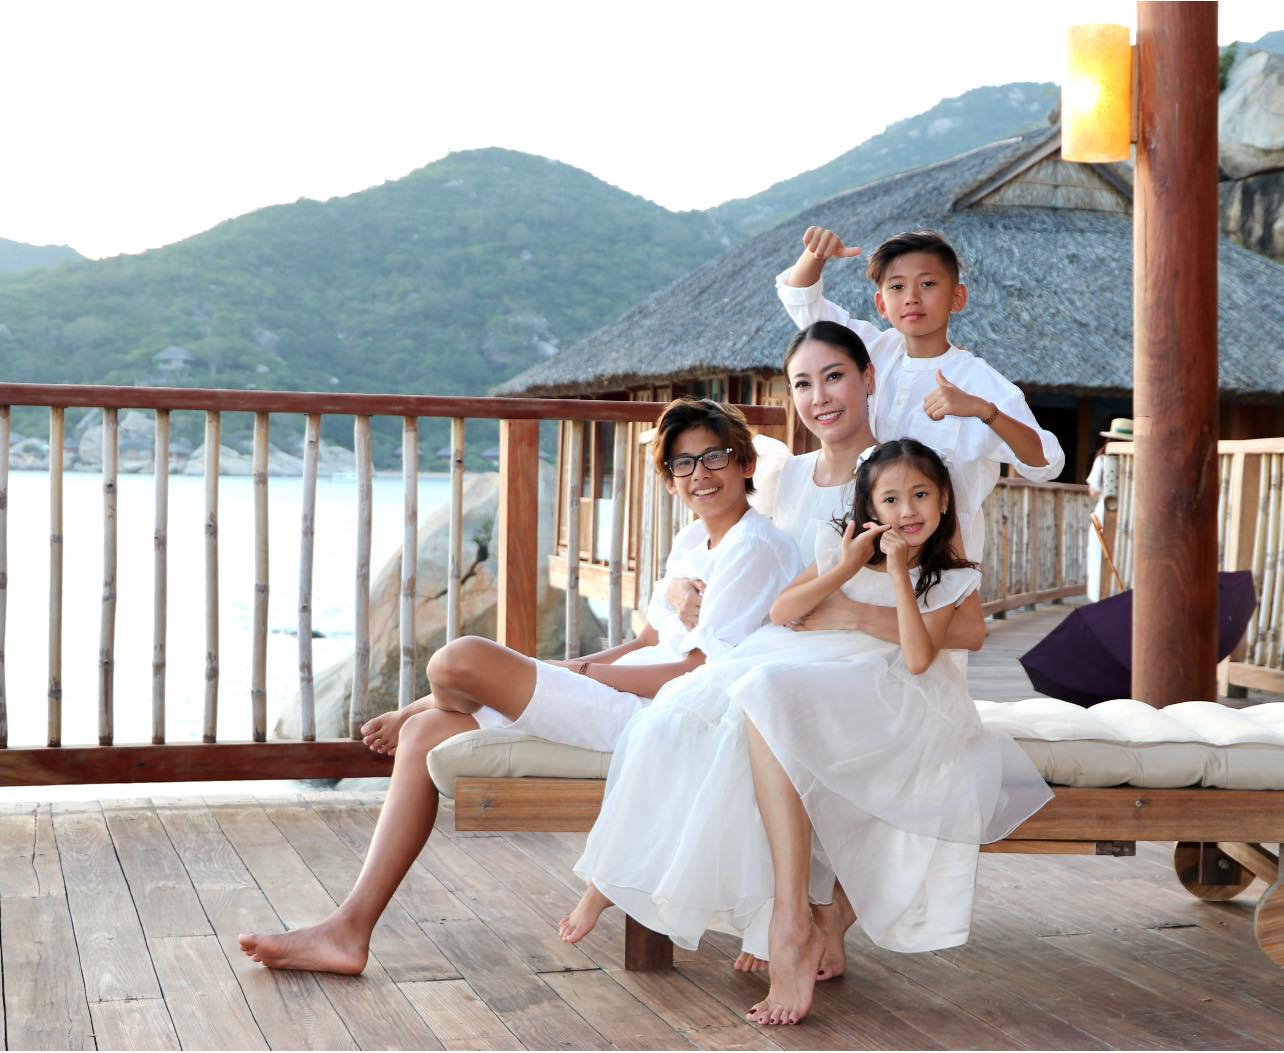 Hoa hậu Hà Kiều Anh tận hưởng chuyến du lịch Nha Trang bên các con. Cô vui vẻ: 'Cả gia đình đã có những ngày nghỉ tuyệt vời. Đầu óc thư thái tận hưởng không khí trong lành quên đi ồn ào nơi phố thị, ở đây chỉ còn ta với trời mây và nước biển xanh ngắt'.